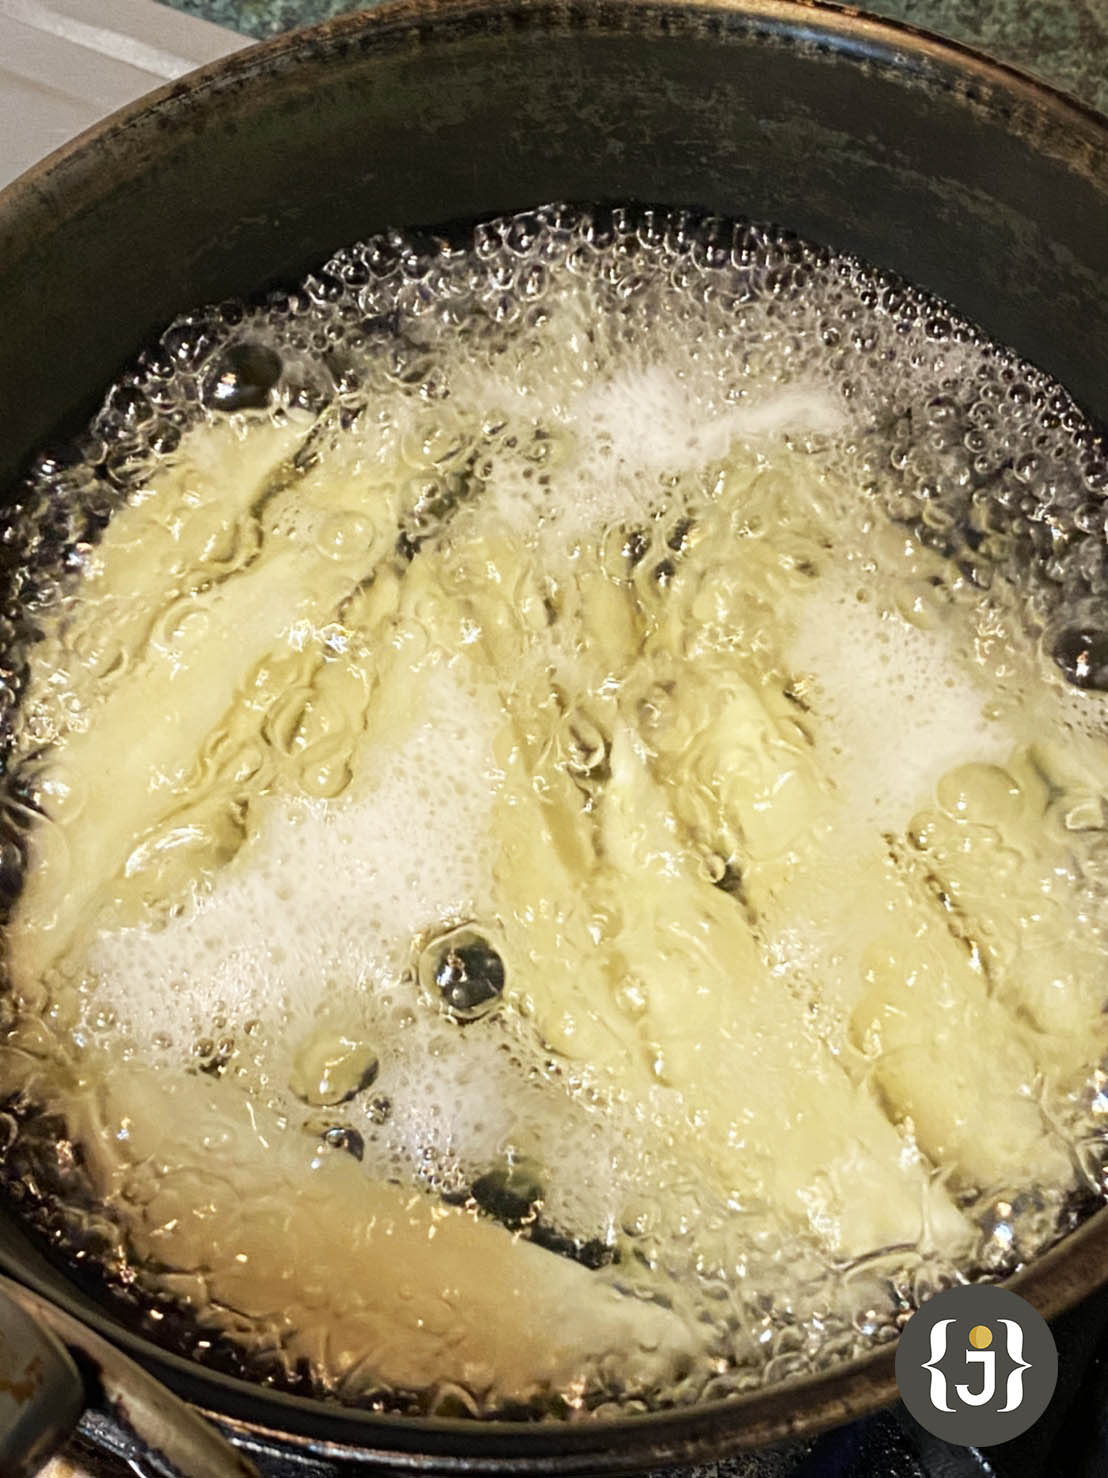 馬鈴薯去皮切長條，沖洗表面澱粉滾水下鍋至浮起。